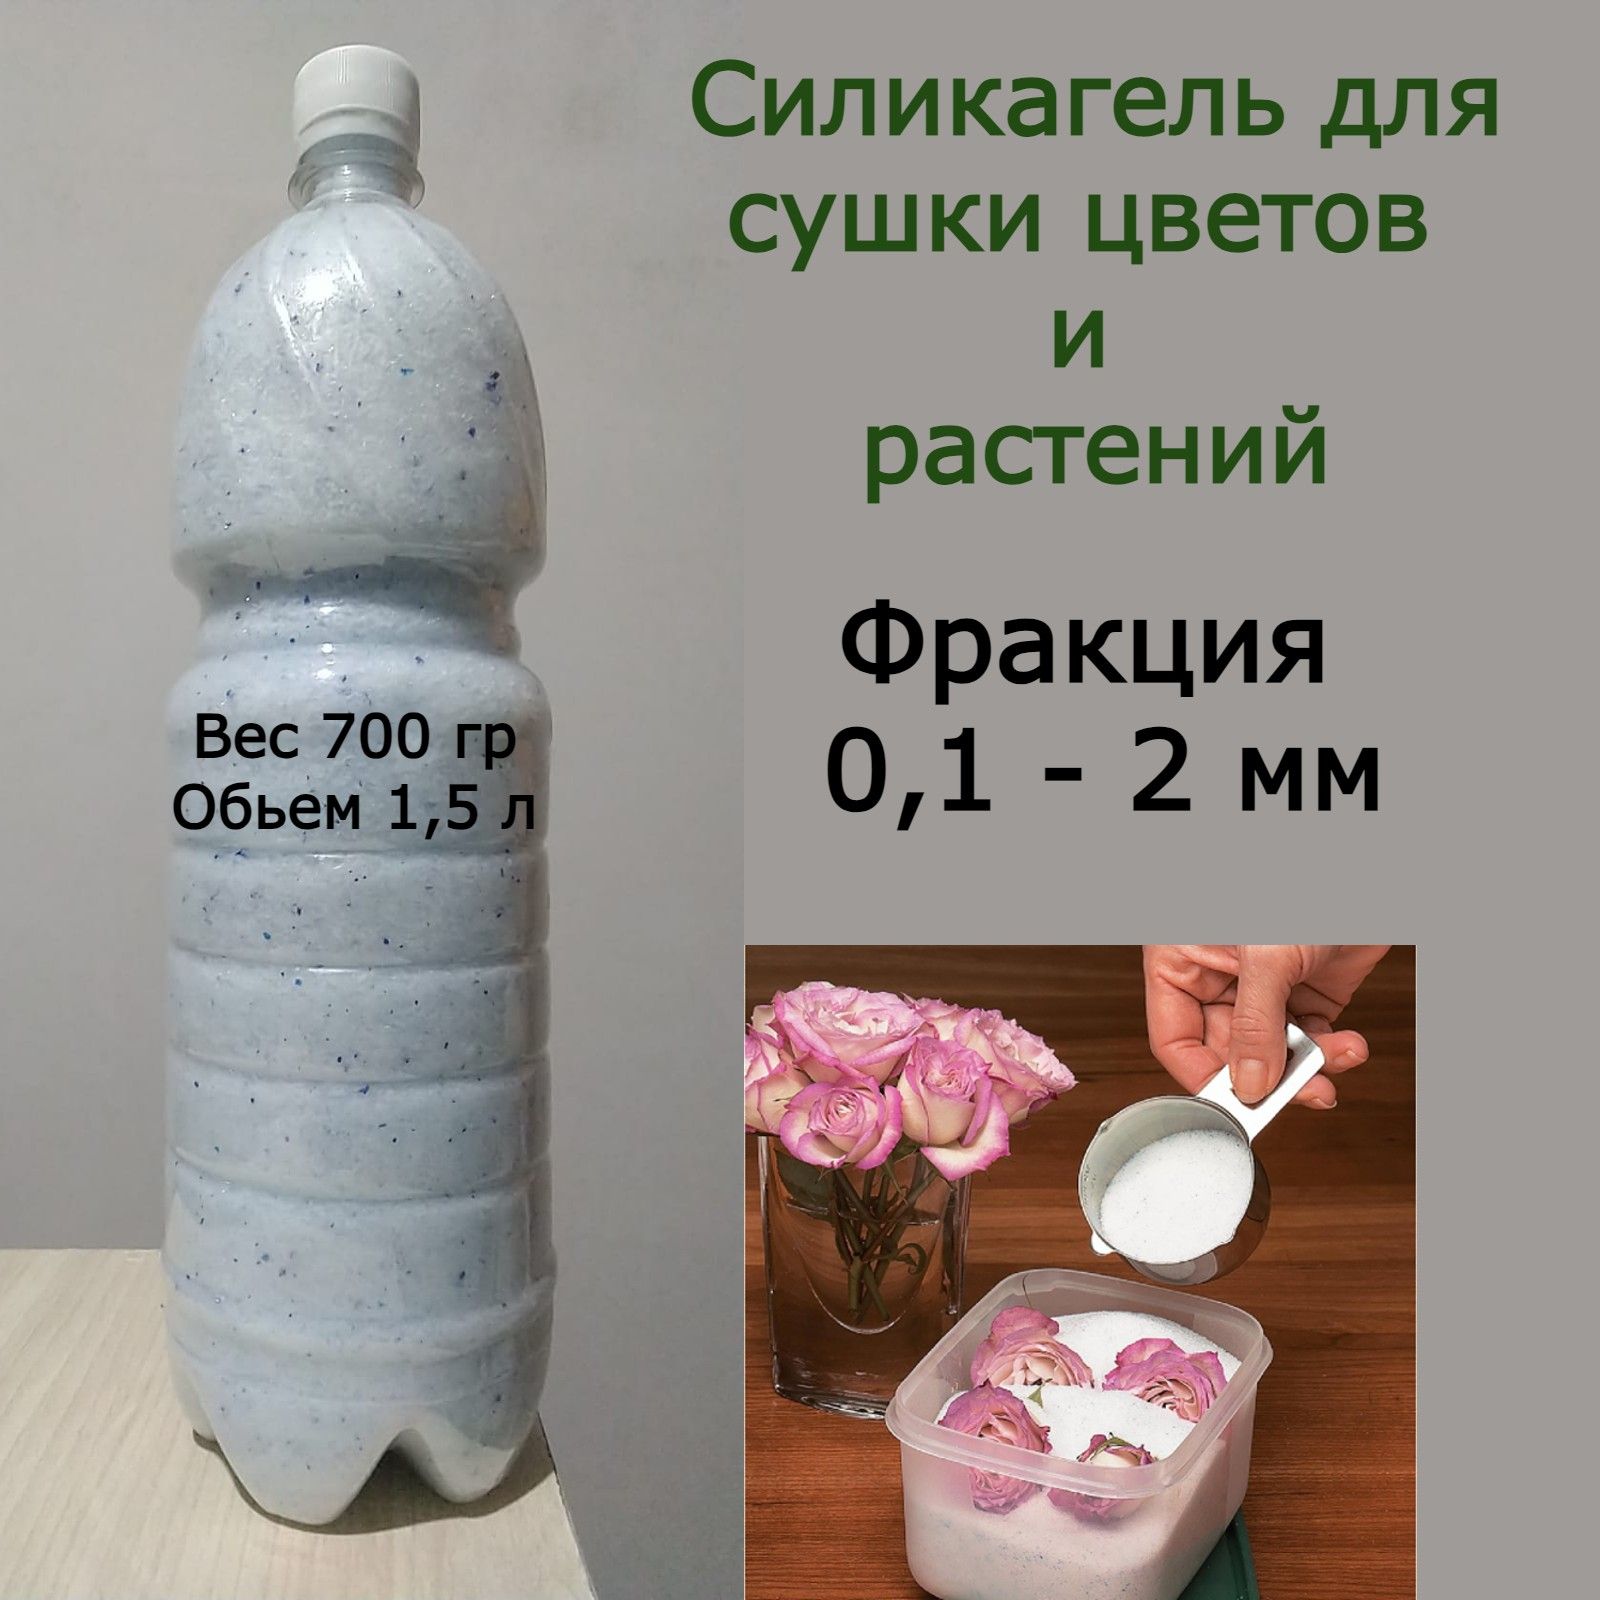 Силикагель для рукоделия и сушки цветов и растений - купить с доставкой повыгодным ценам в интернет-магазине OZON (1264364672)